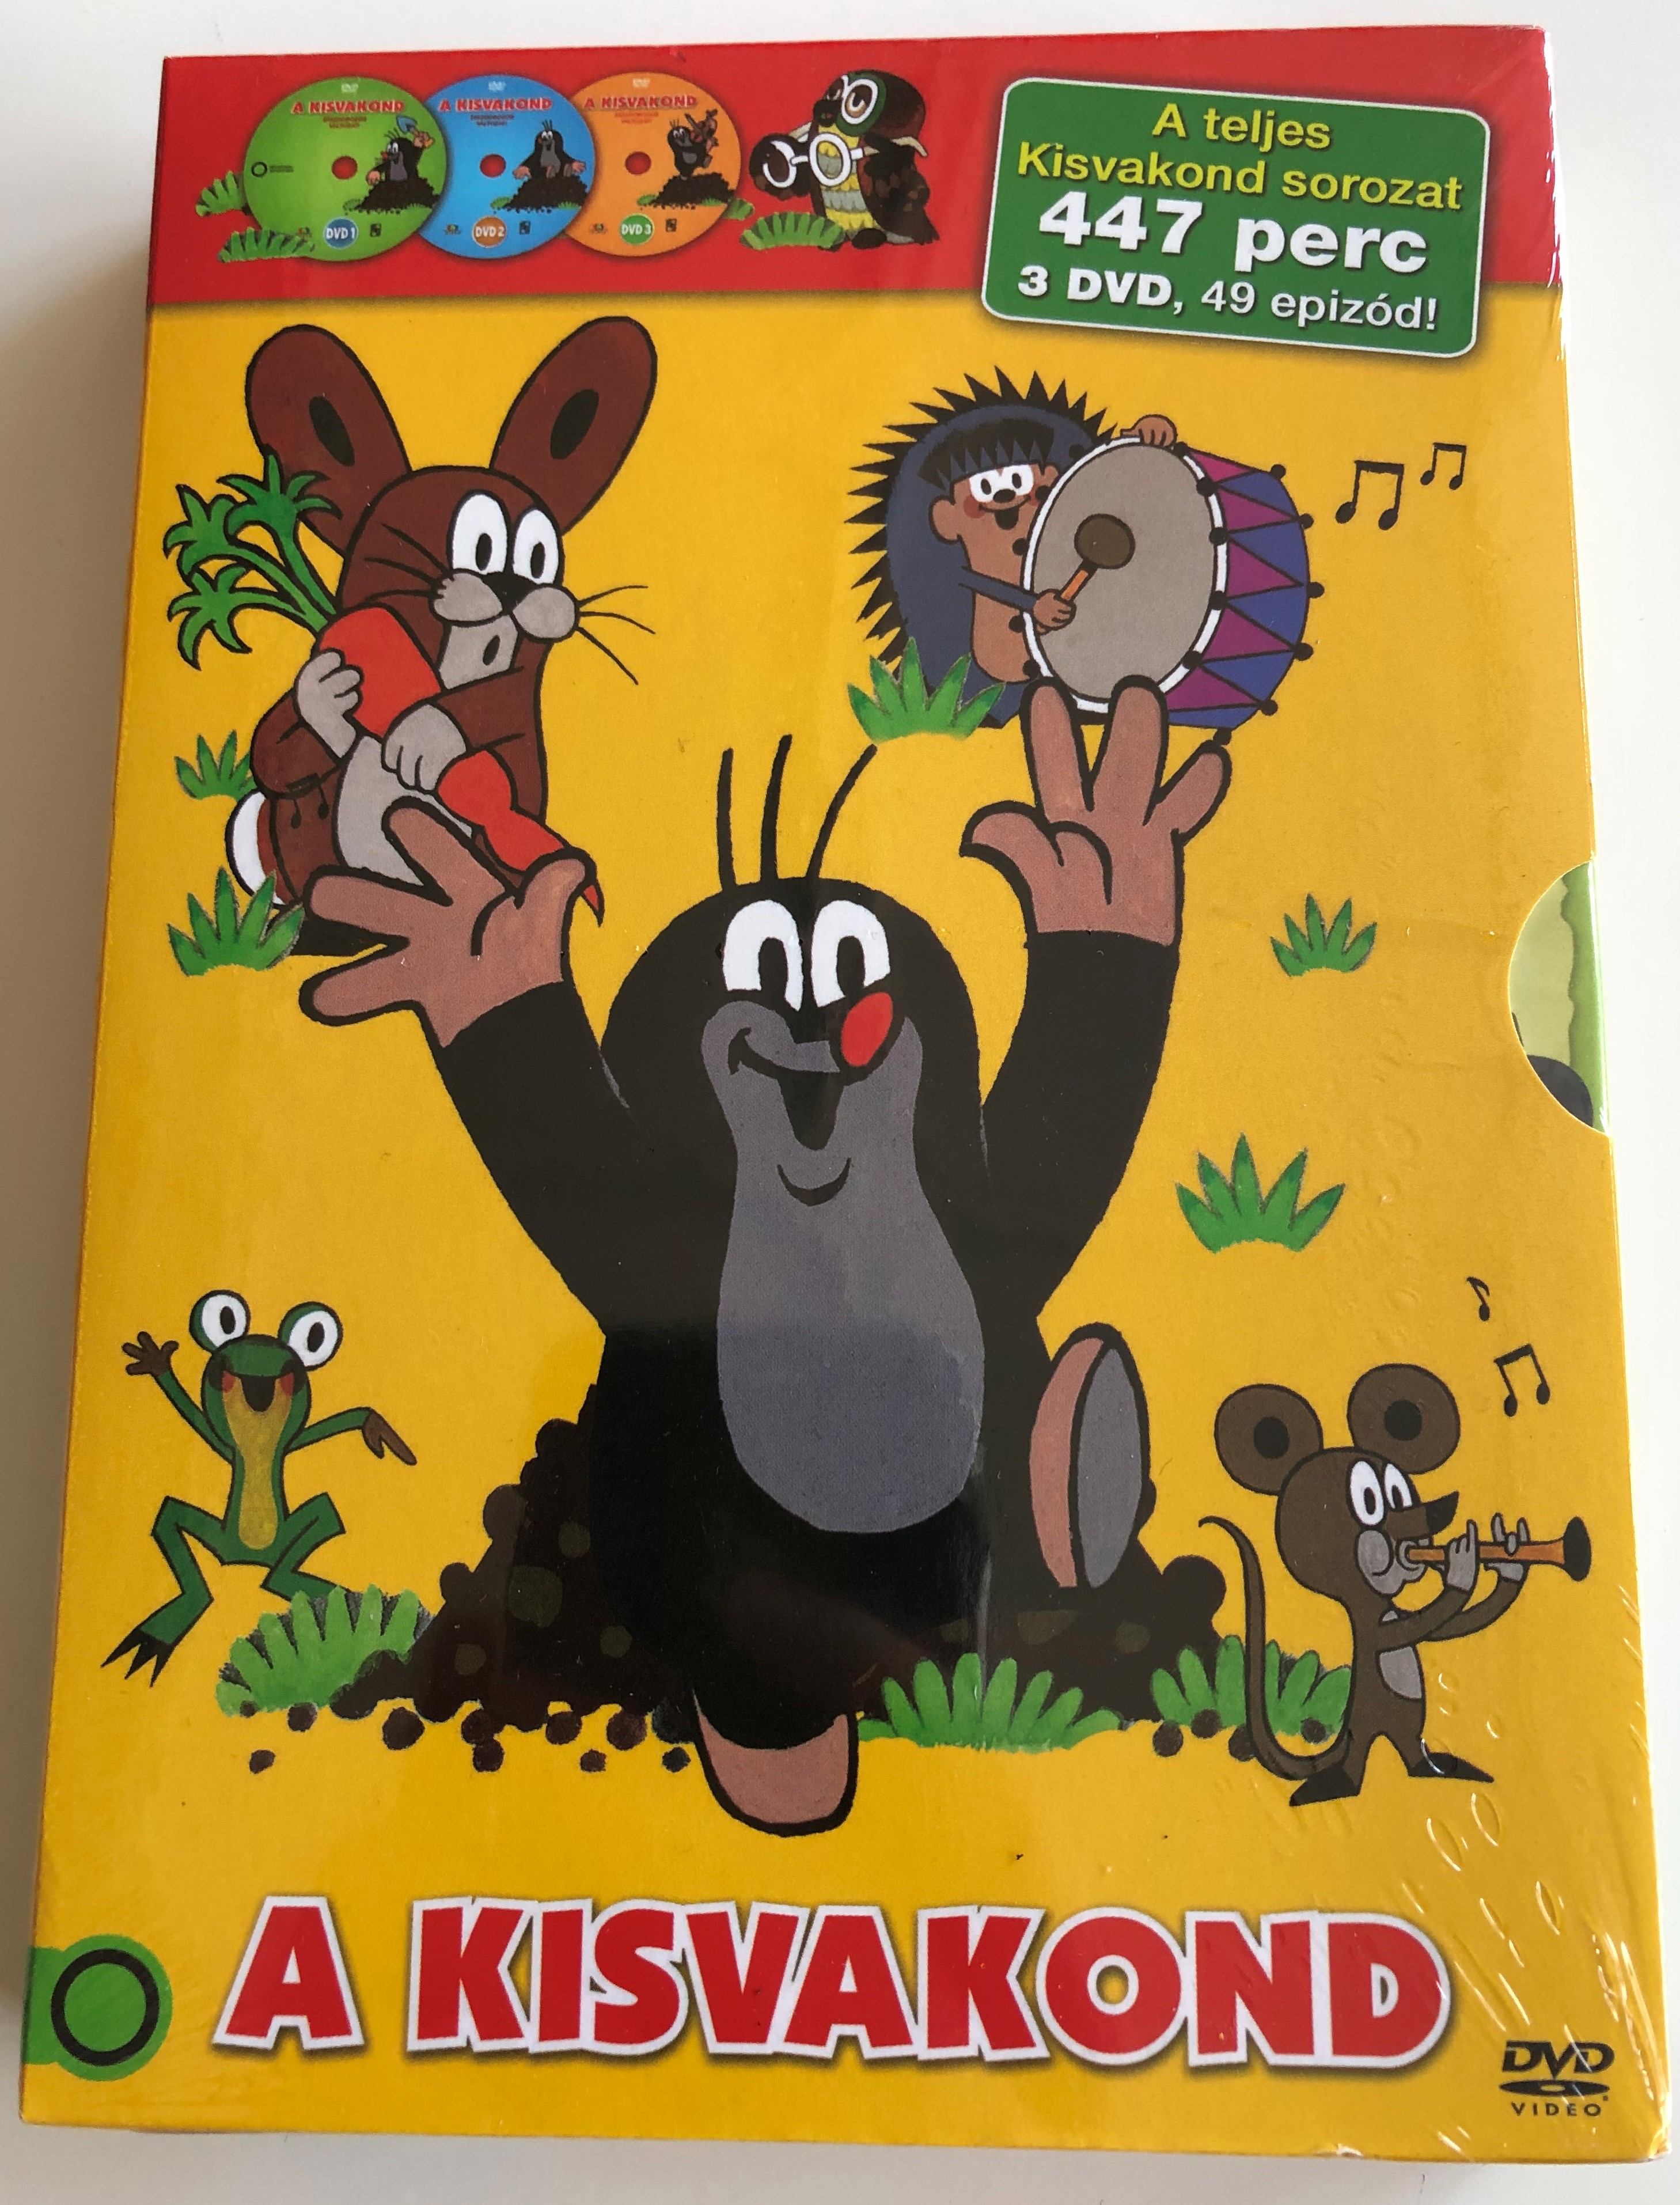 A kisvakond DVD SET Krtek the Mole Full Series 1.JPG